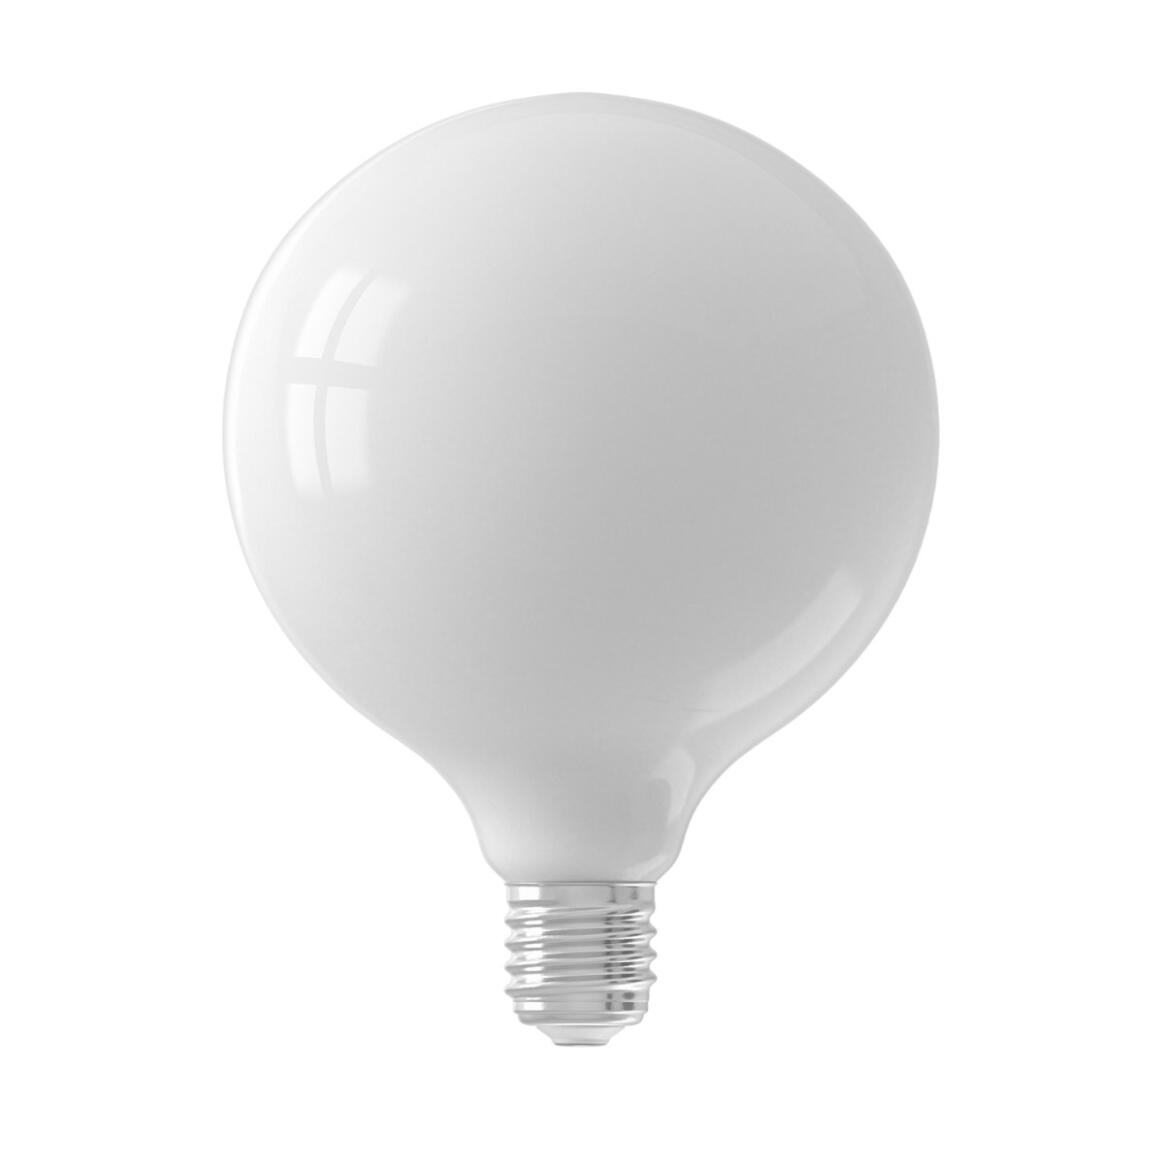 Ampoule globe LED blanc laiteux à intensité variable E27 6W 2700k 650lm 12.5cm main product image